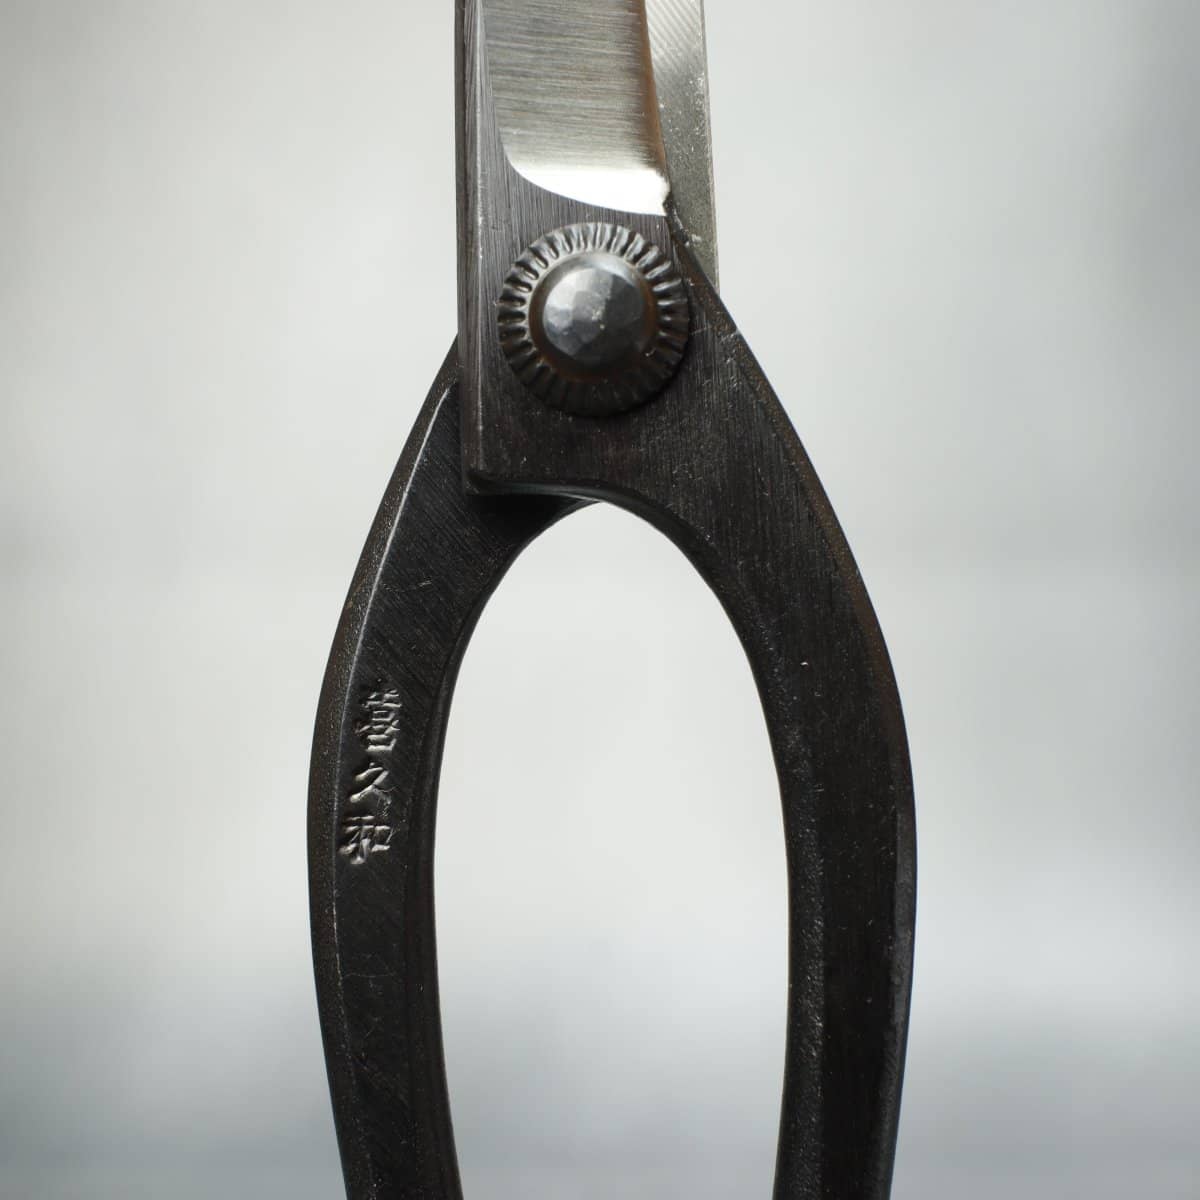 Kikuwa Bonsai Tool Kit 5 Piece Carbon Steel